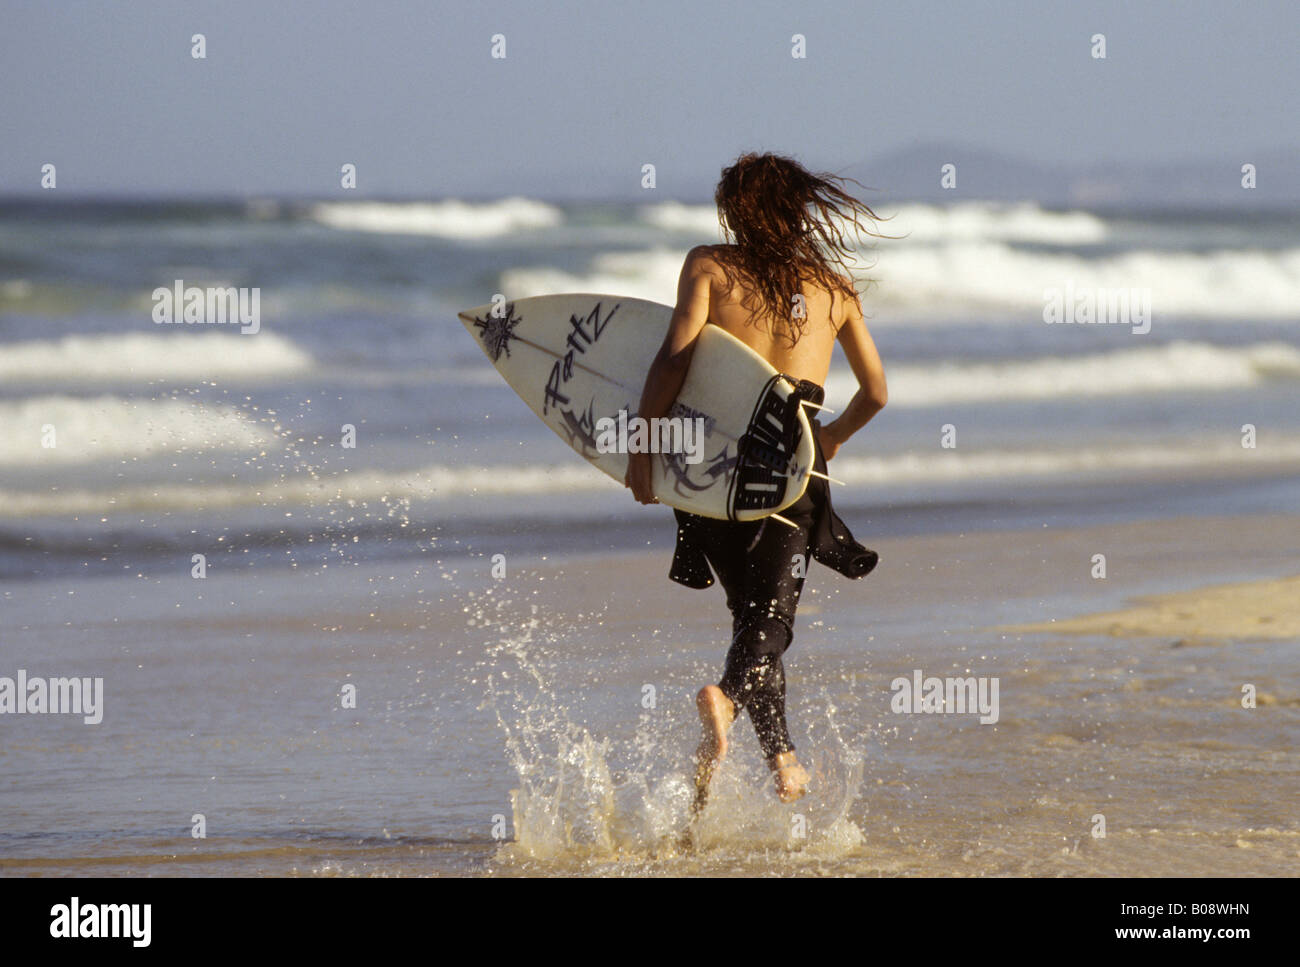 Jeune surfer le long de la plage avec une planche de surf sous le bras, la plage de Surfers Paradise, Gold Coast, Queensland, Australie Banque D'Images